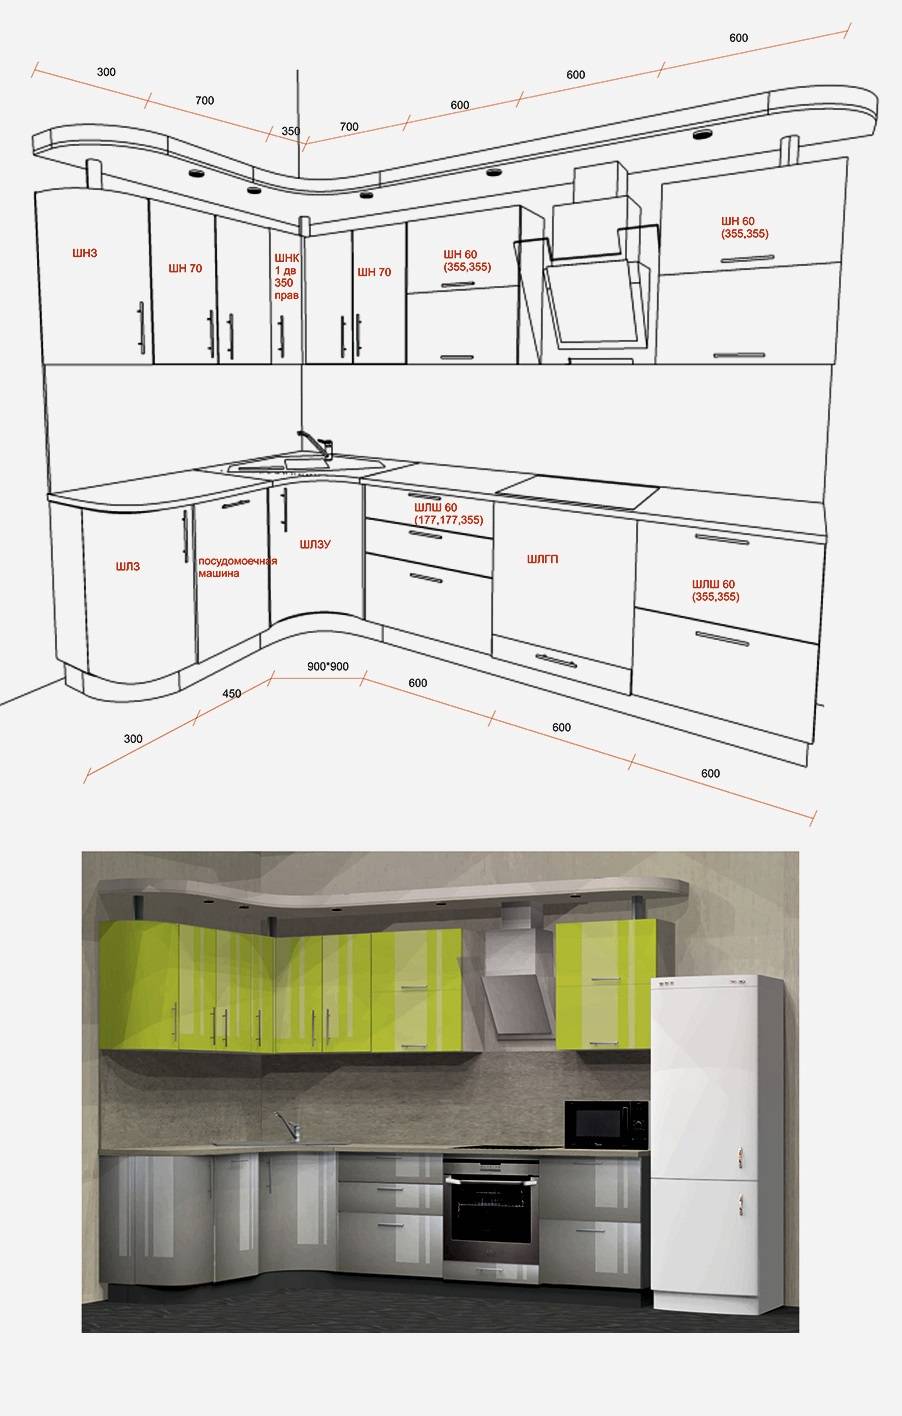 Несколько месяцев работы с корпусной мебелью дали мне представление о материалах и проектировании кухонь, во время ремонта пригодилось